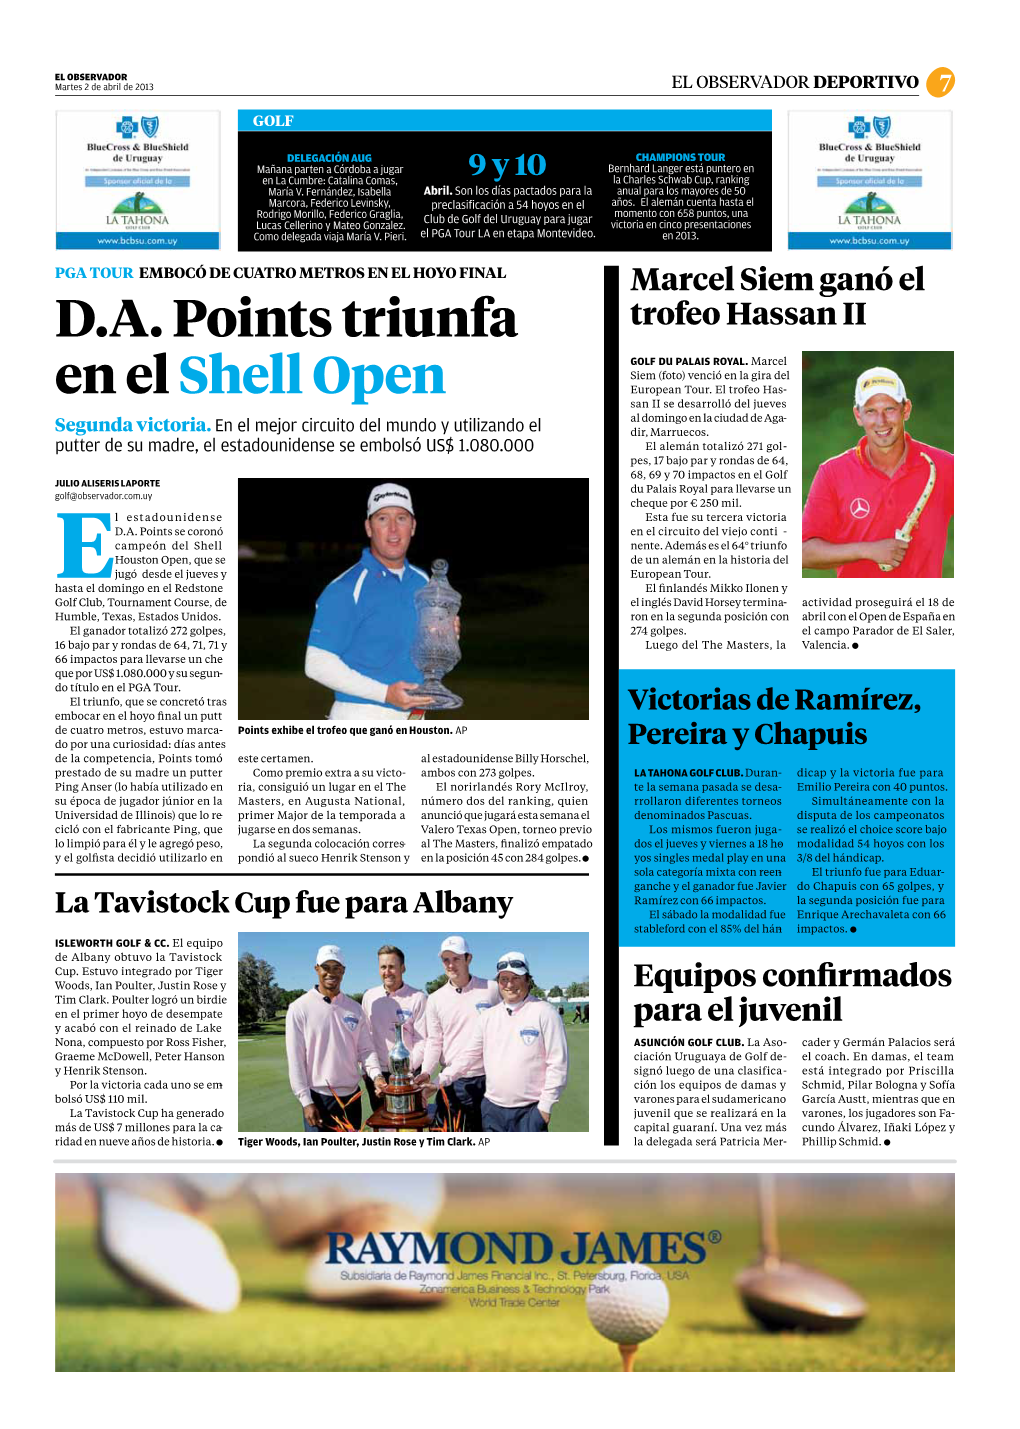 D.A. Points Triunfa En El Shell Open